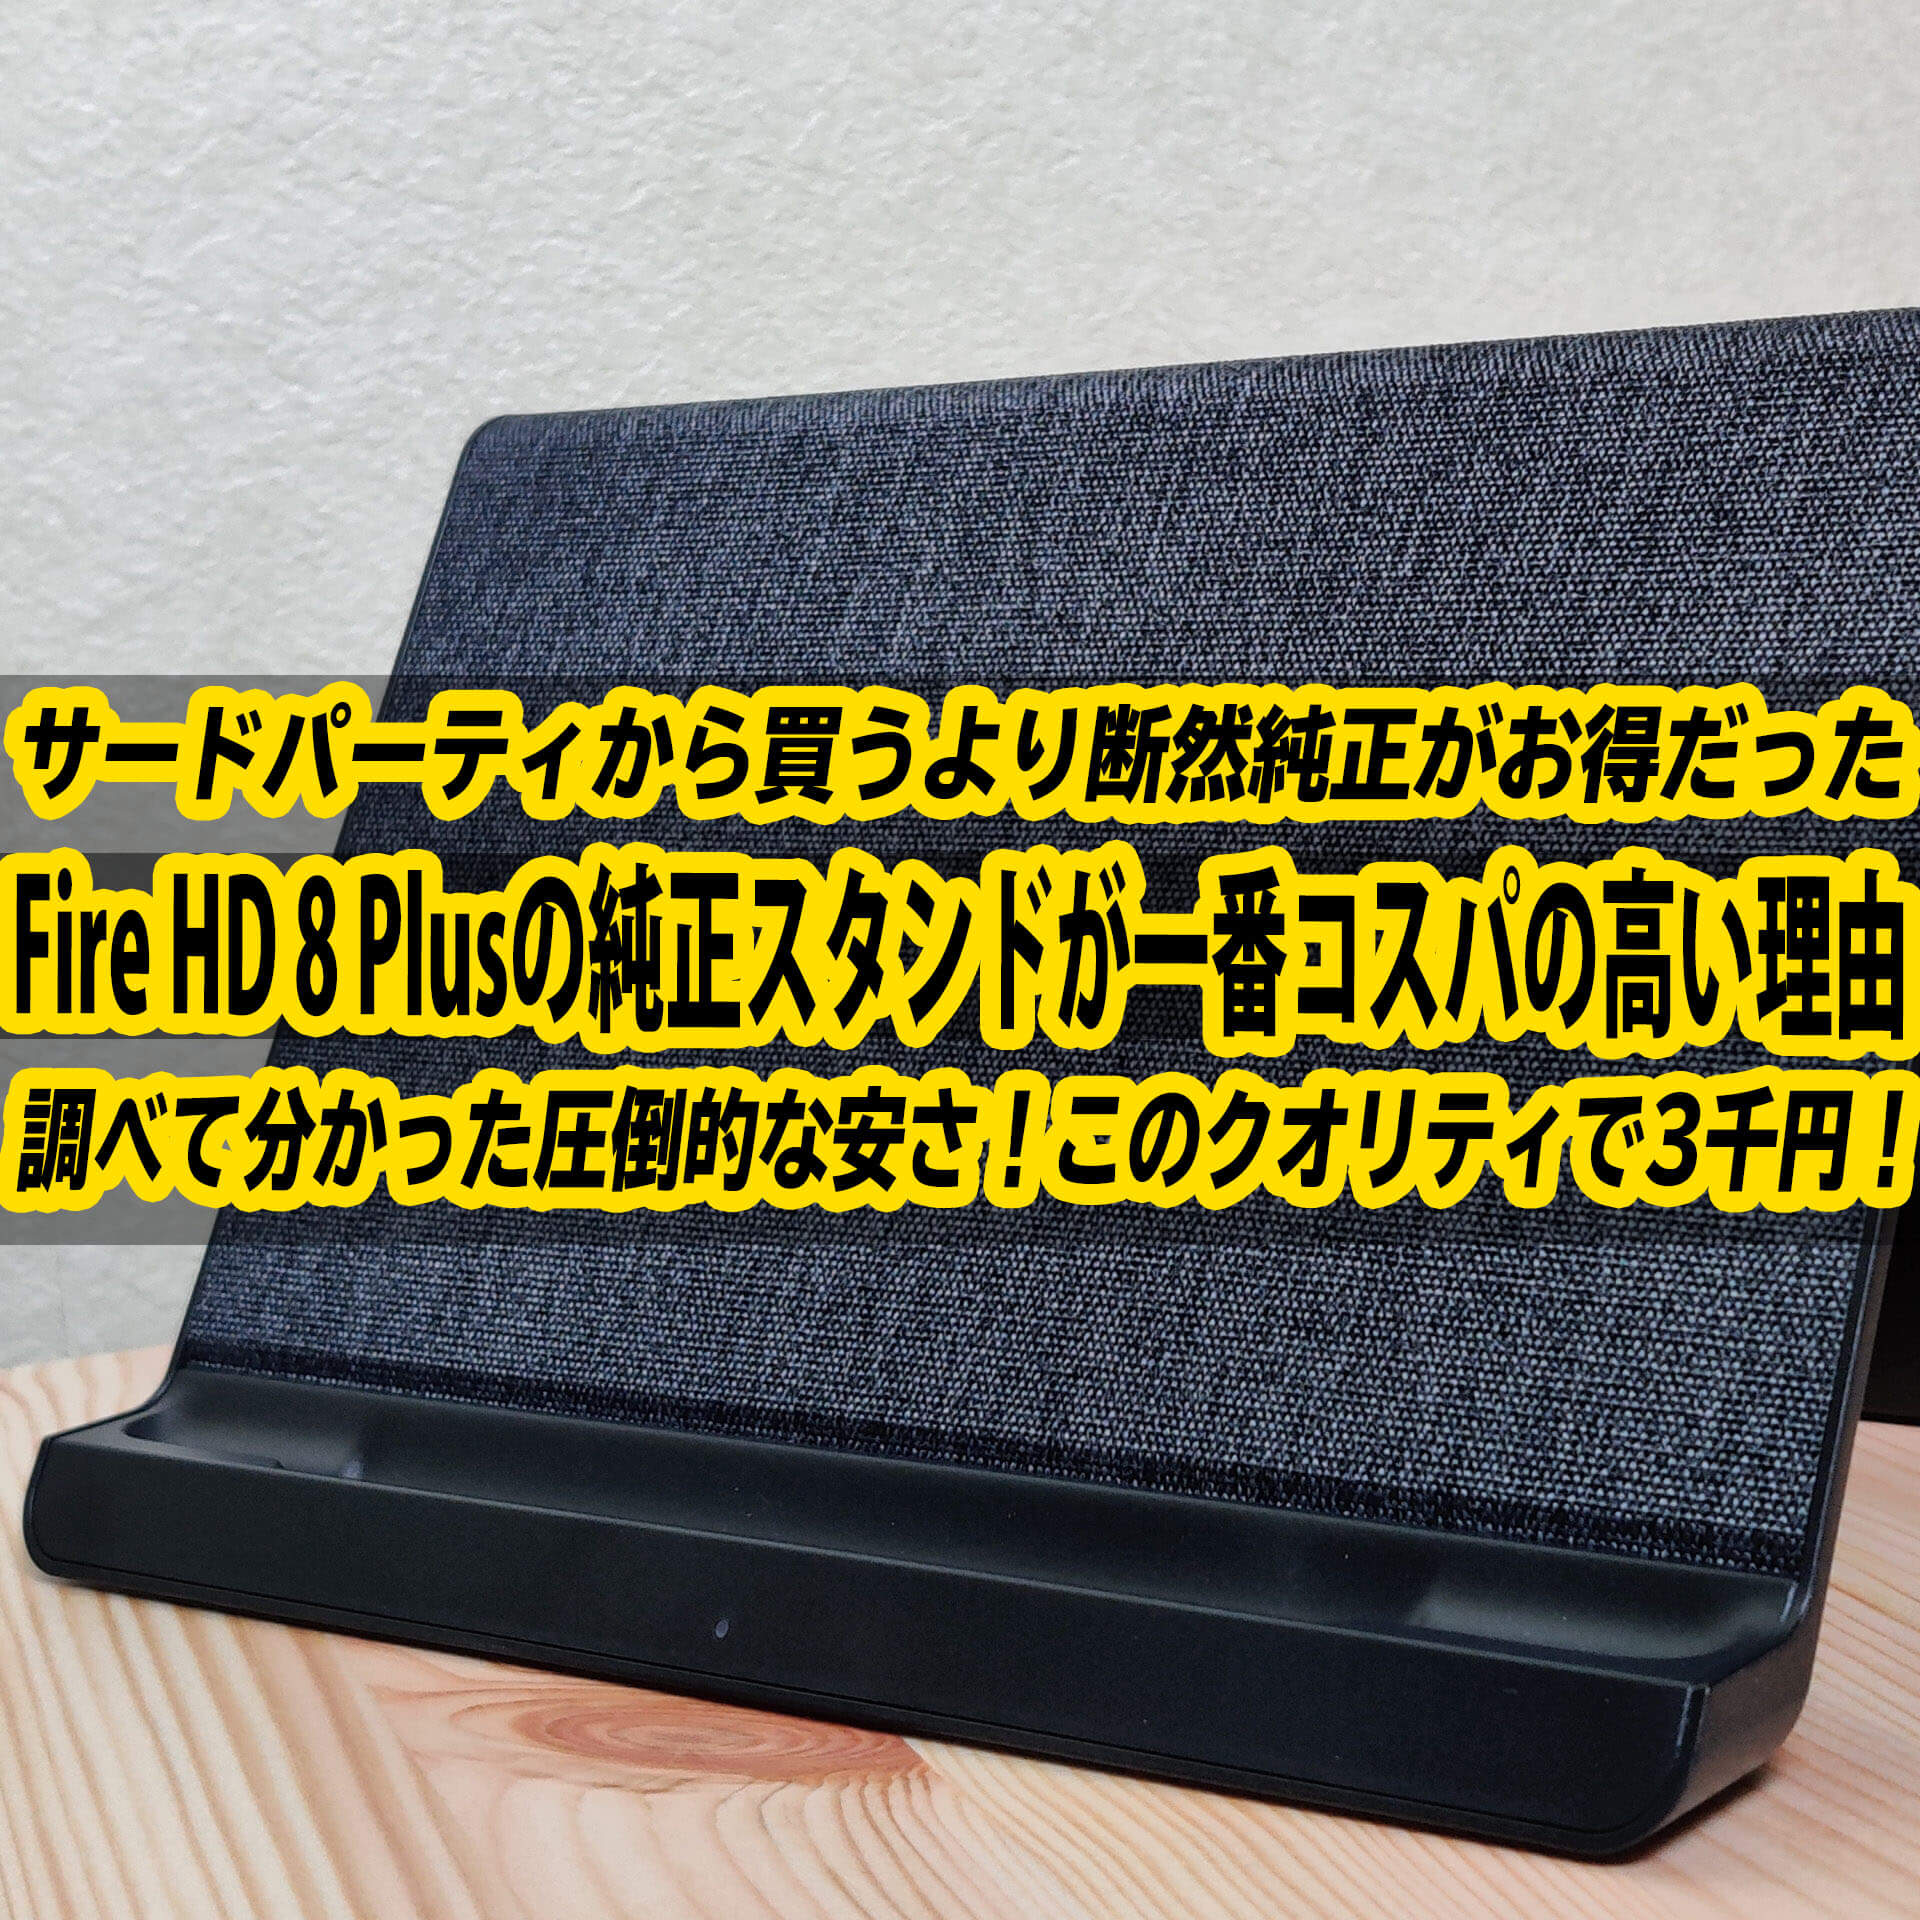 Amazon Fire HD 8 Plusのワイヤレス充電スタンドは純正が一番コスパの 